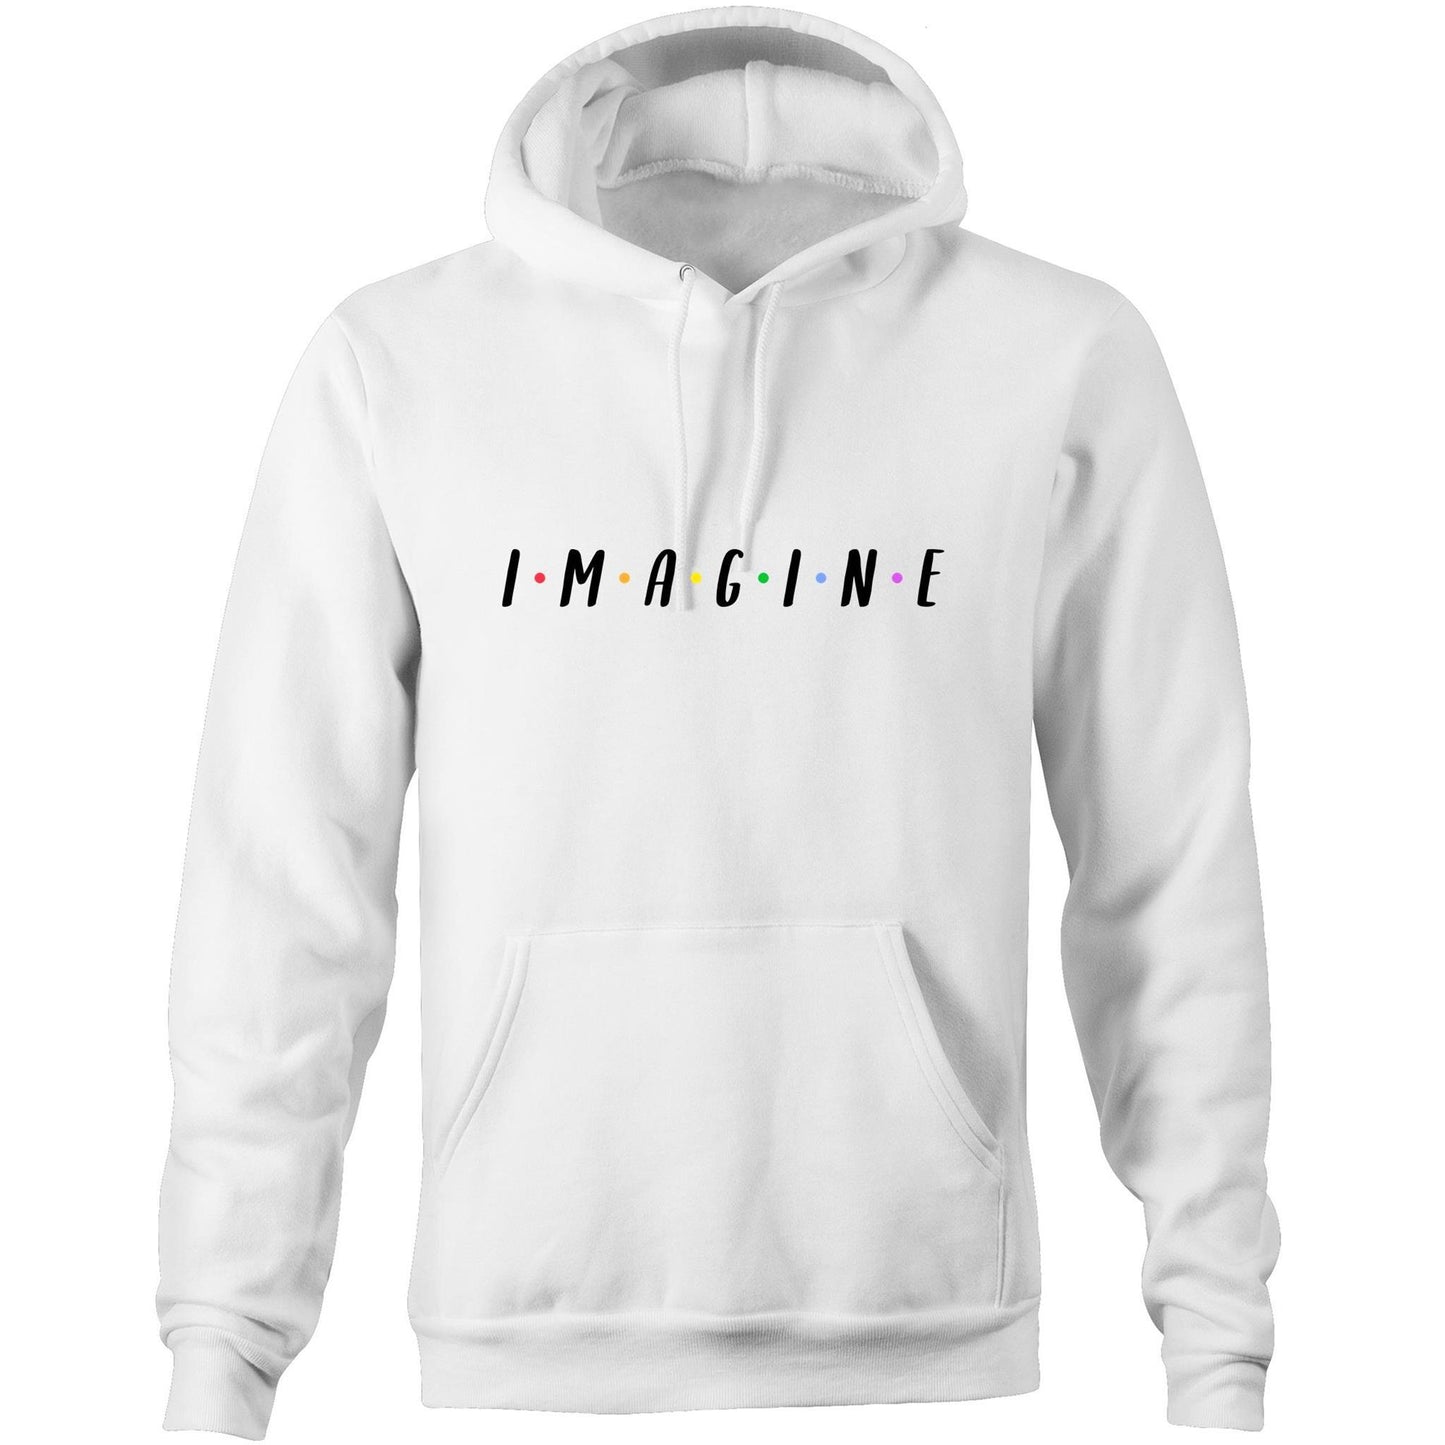 Imagine - Pocket Hoodie Sweatshirt White Hoodie Mens Womens